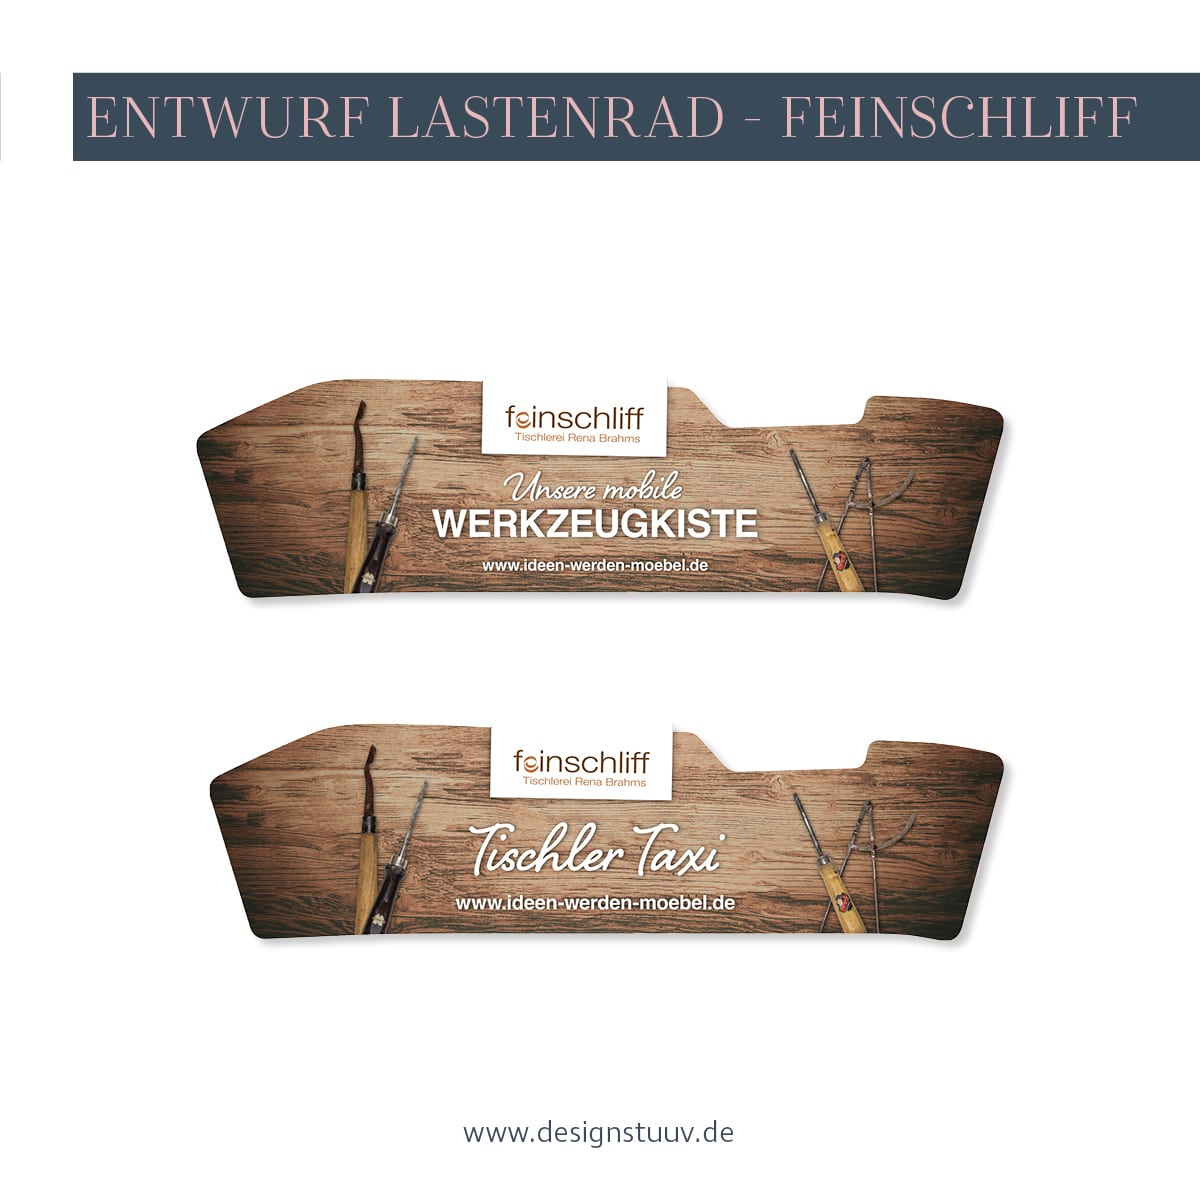 Case-Lastenrad-Feinschliff